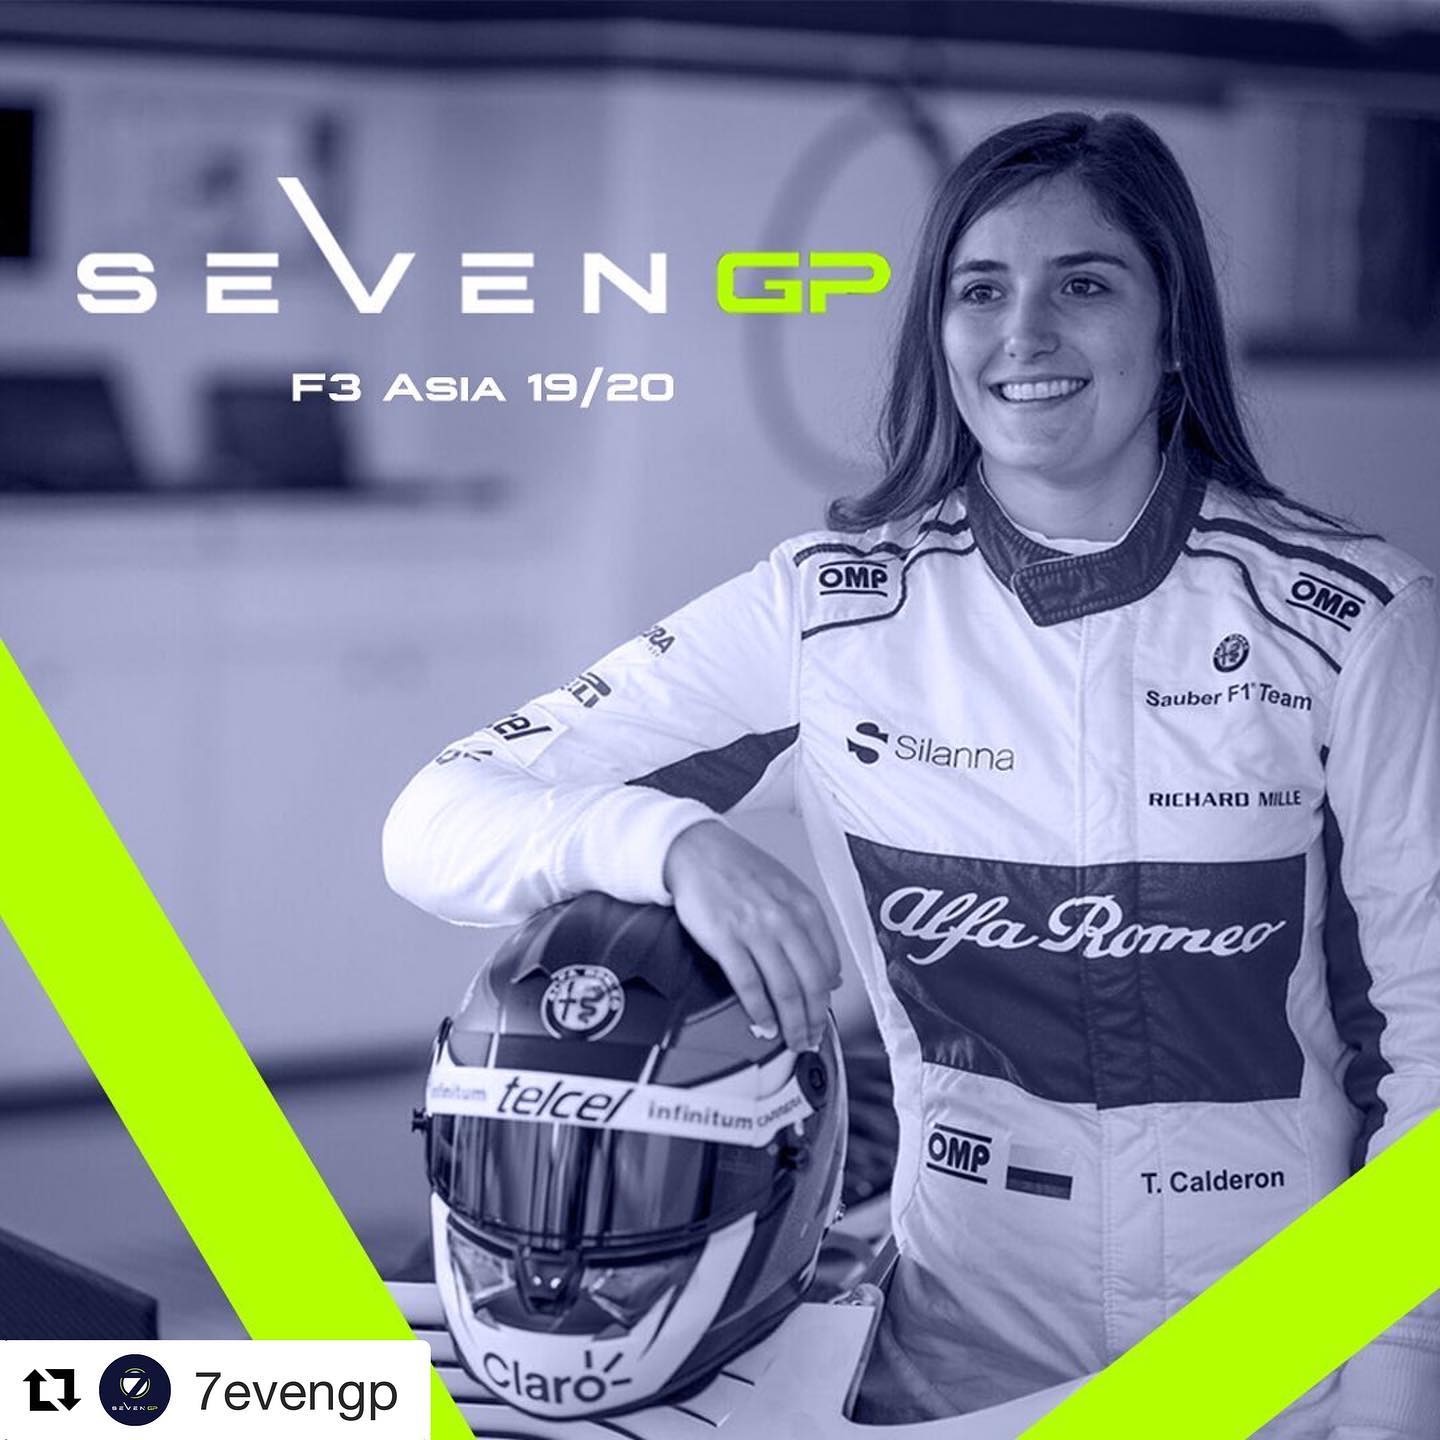 阿尔法罗密欧F1车队试车手Tatiana Calderon加入SEVEN GP参加新赛季